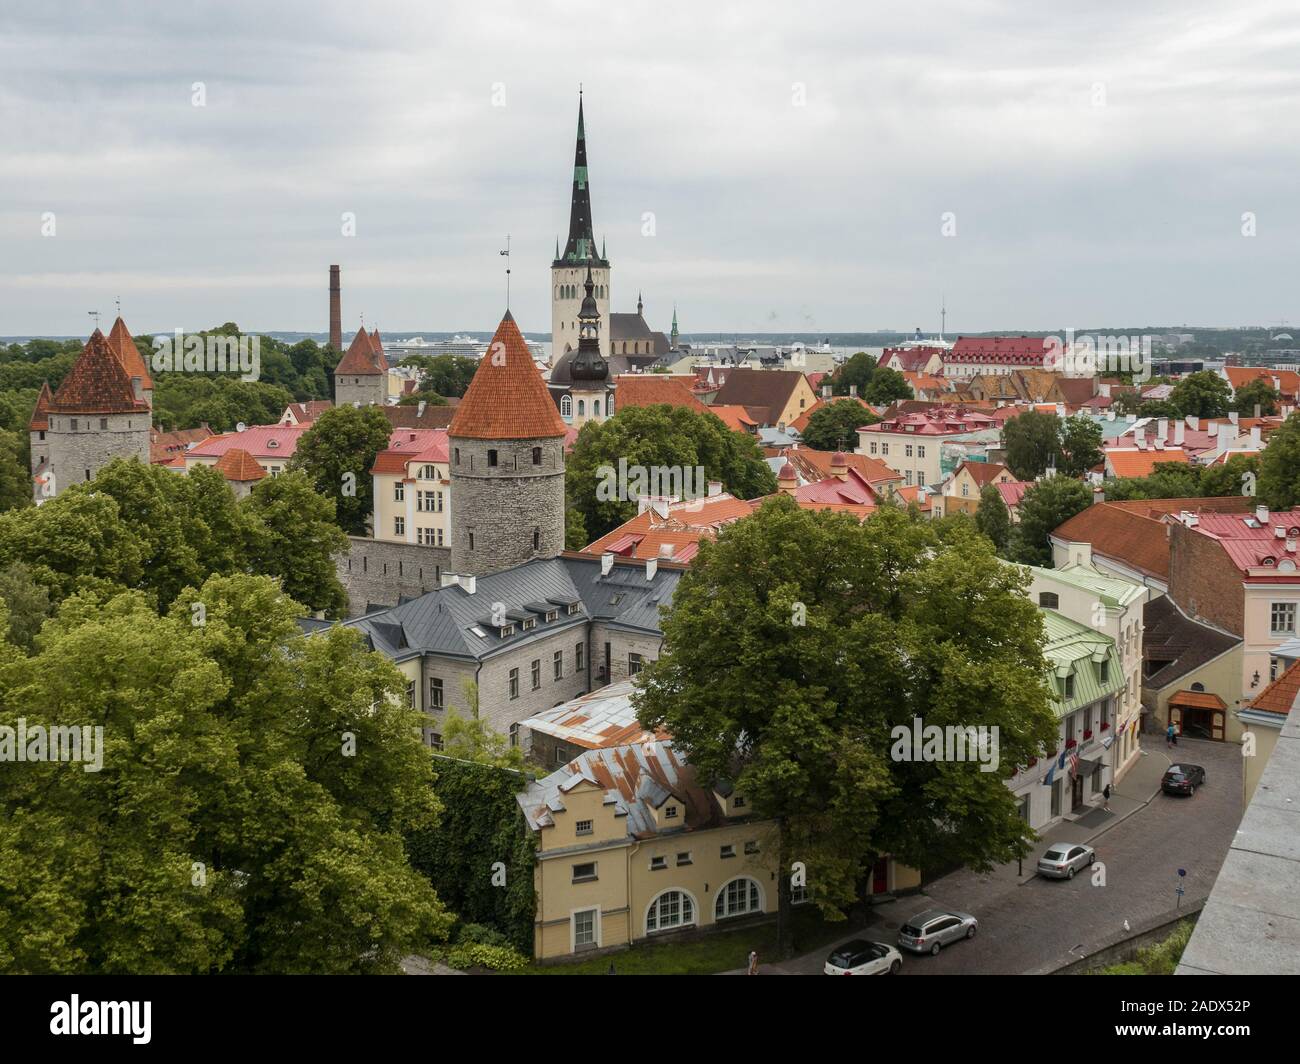 Tallinn Old Town, UNESCO world herritage site. Stock Photo